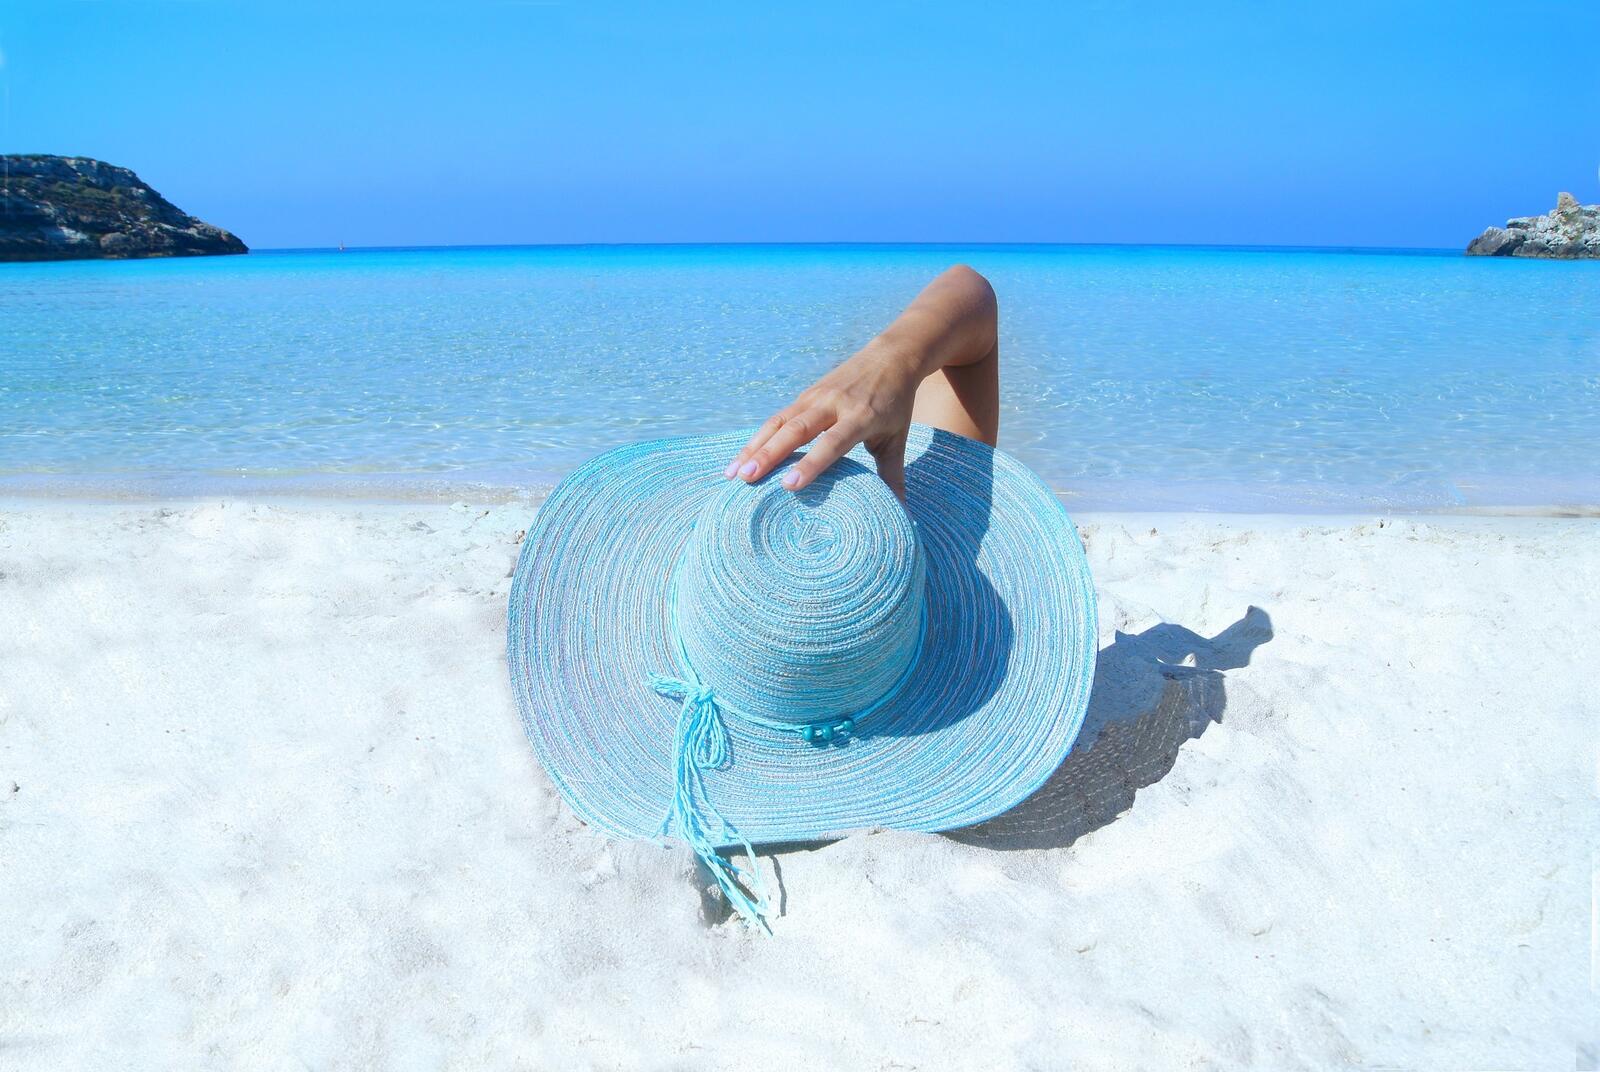 Бесплатное фото Отдых на пляже в голубой шляпе